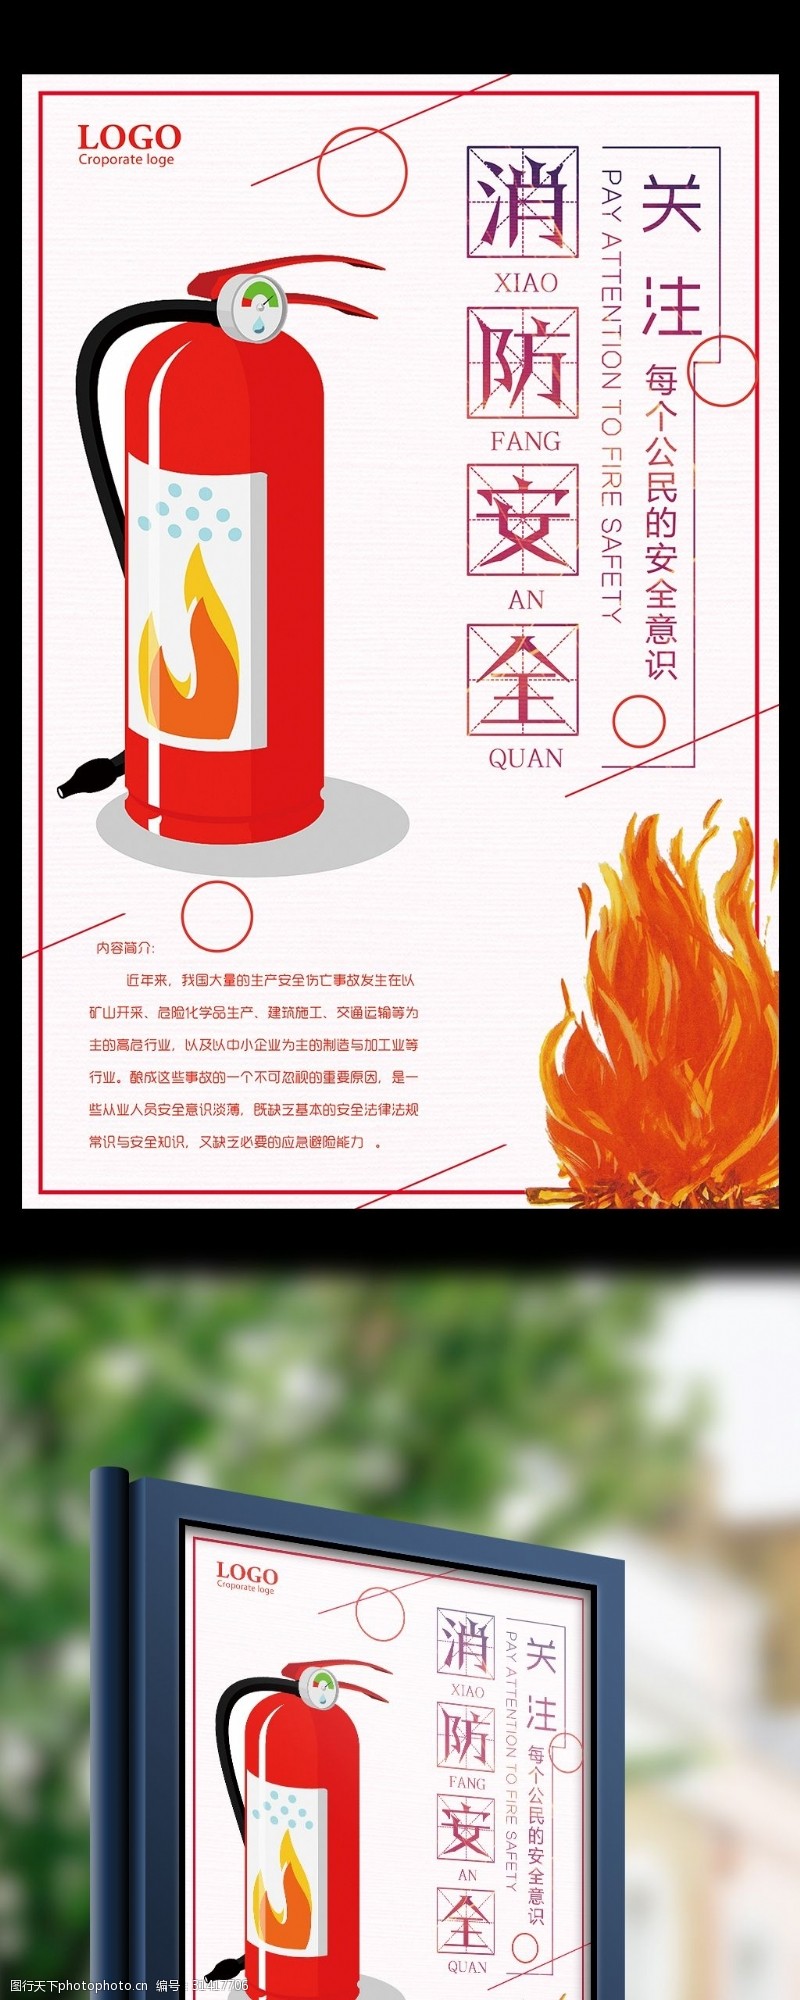 消防文化口号关注消防安全公民安全意识宣传海报